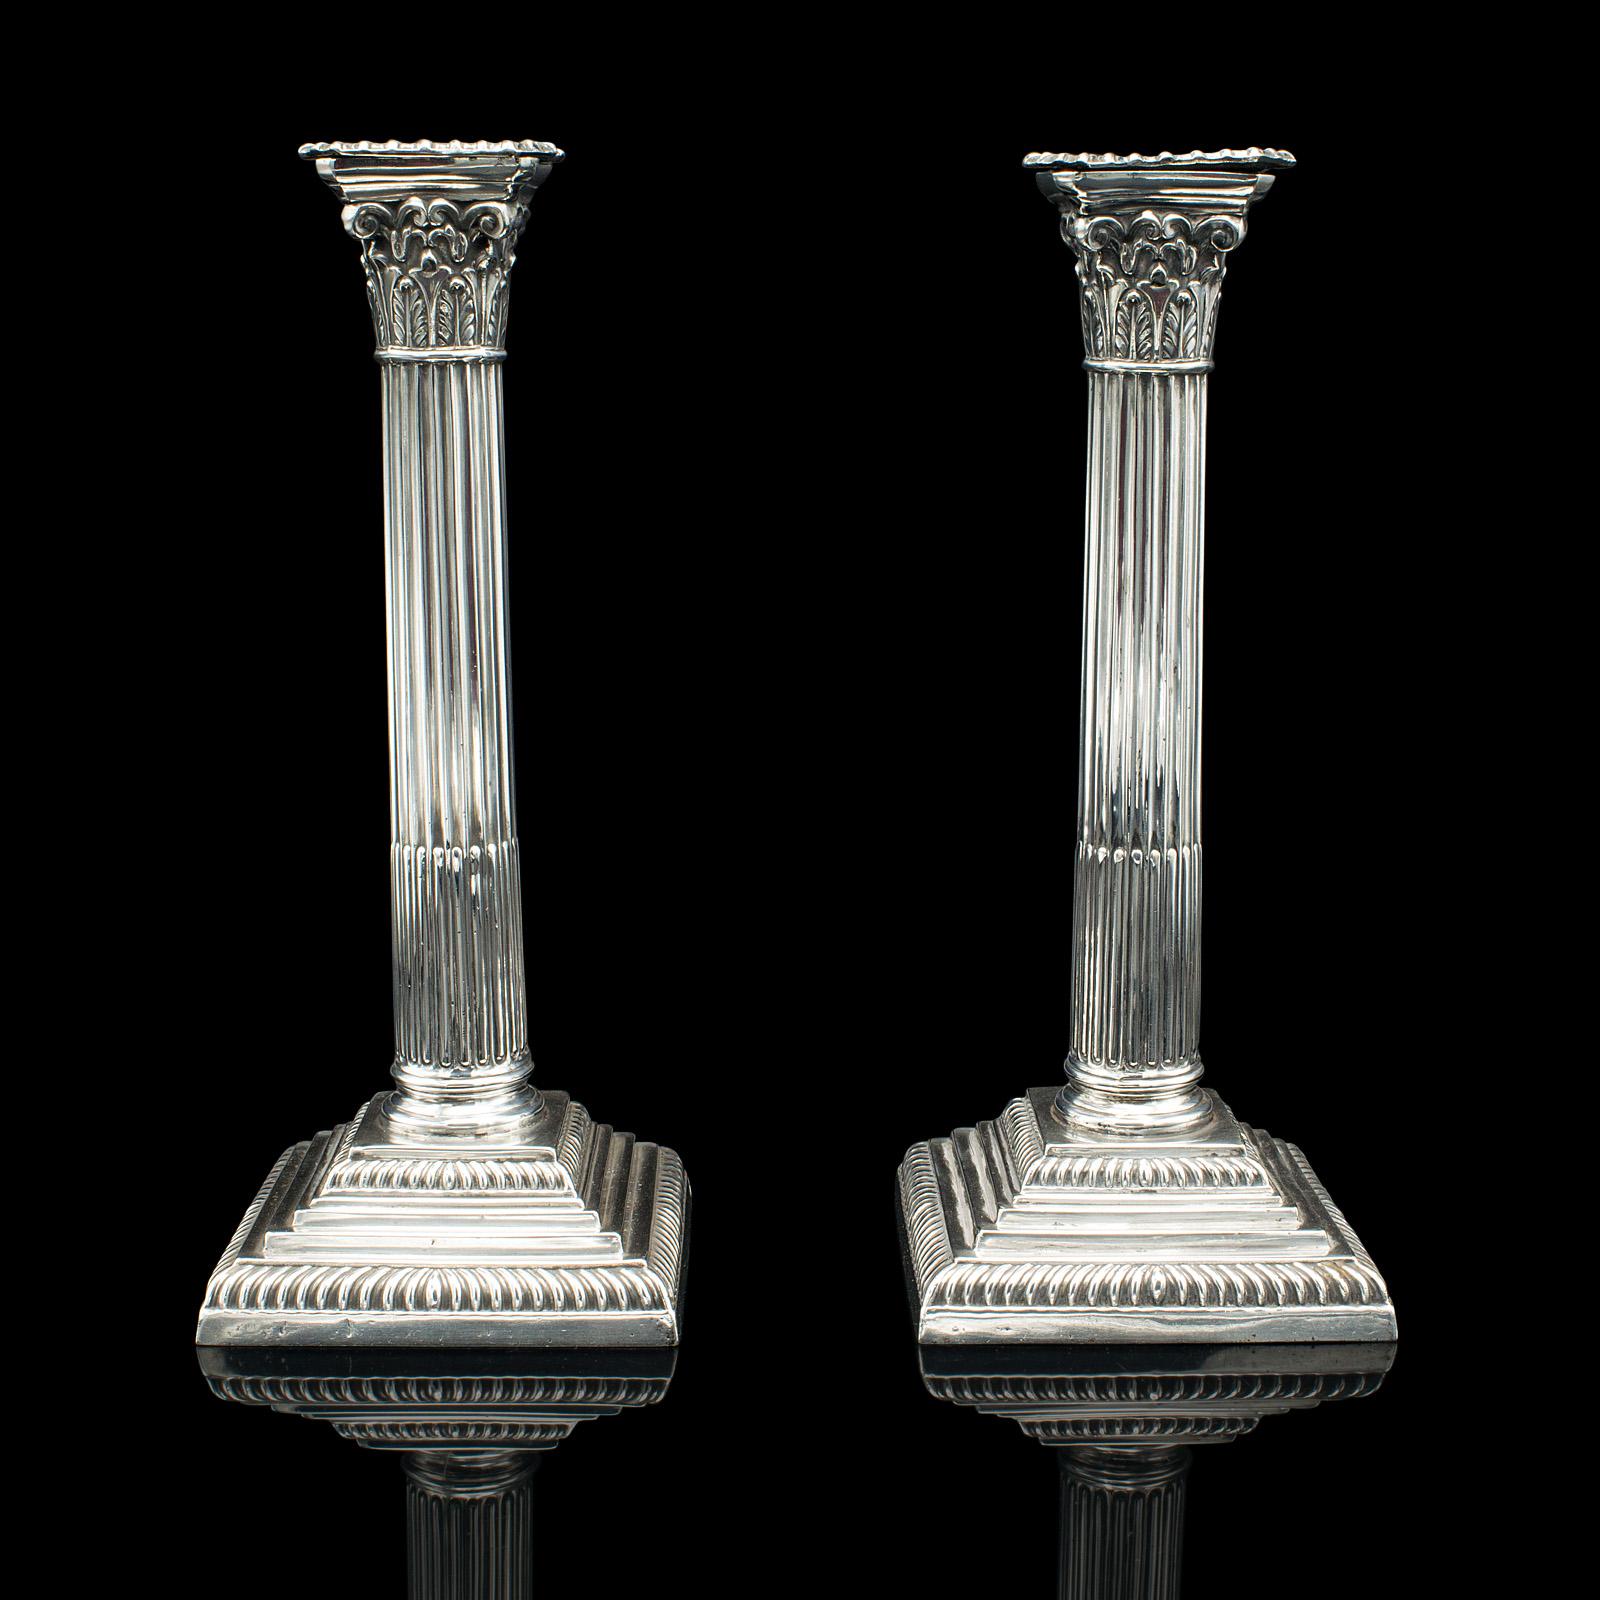 Il s'agit d'une paire de chandeliers décoratifs anciens. Un bougeoir anglais en métal argenté de style classique, datant de la fin de la période victorienne, vers 1900.

Ravissants bougeoirs à l'esthétique traditionnelle
Présentant une patine